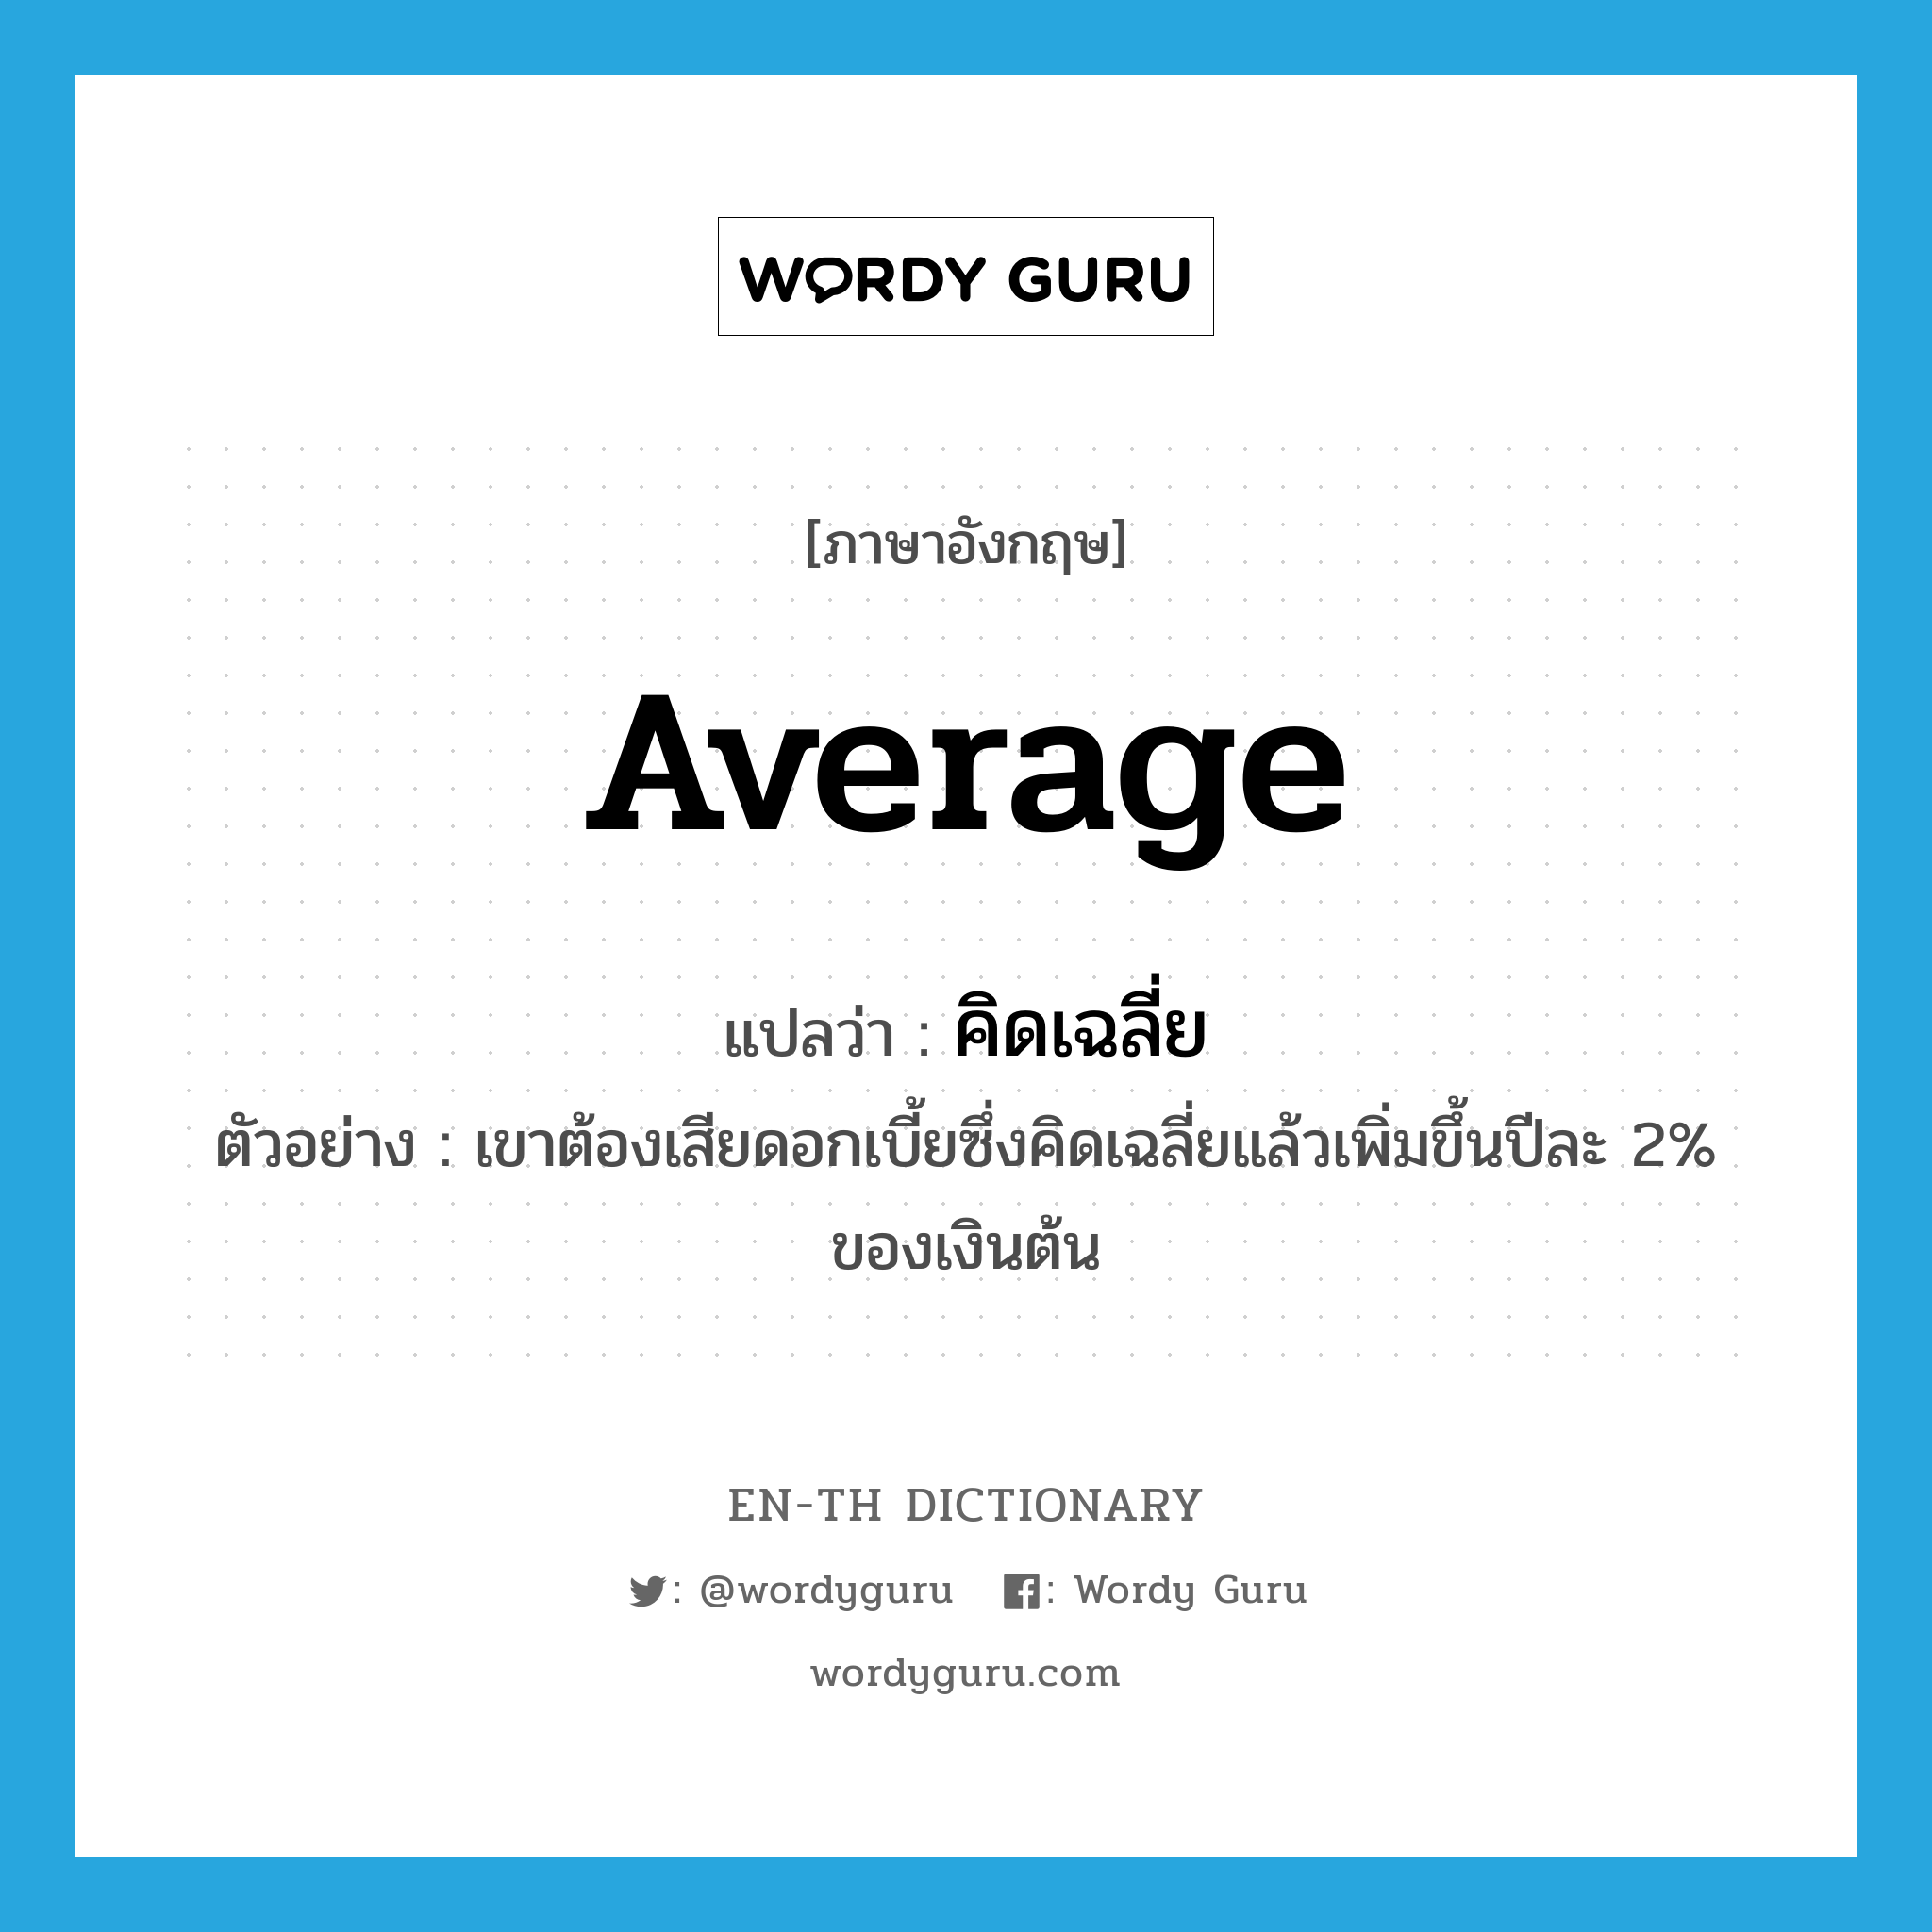 average แปลว่า?, คำศัพท์ภาษาอังกฤษ average แปลว่า คิดเฉลี่ย ประเภท V ตัวอย่าง เขาต้องเสียดอกเบี้ยซึ่งคิดเฉลี่ยแล้วเพิ่มขึ้นปีละ 2% ของเงินต้น หมวด V